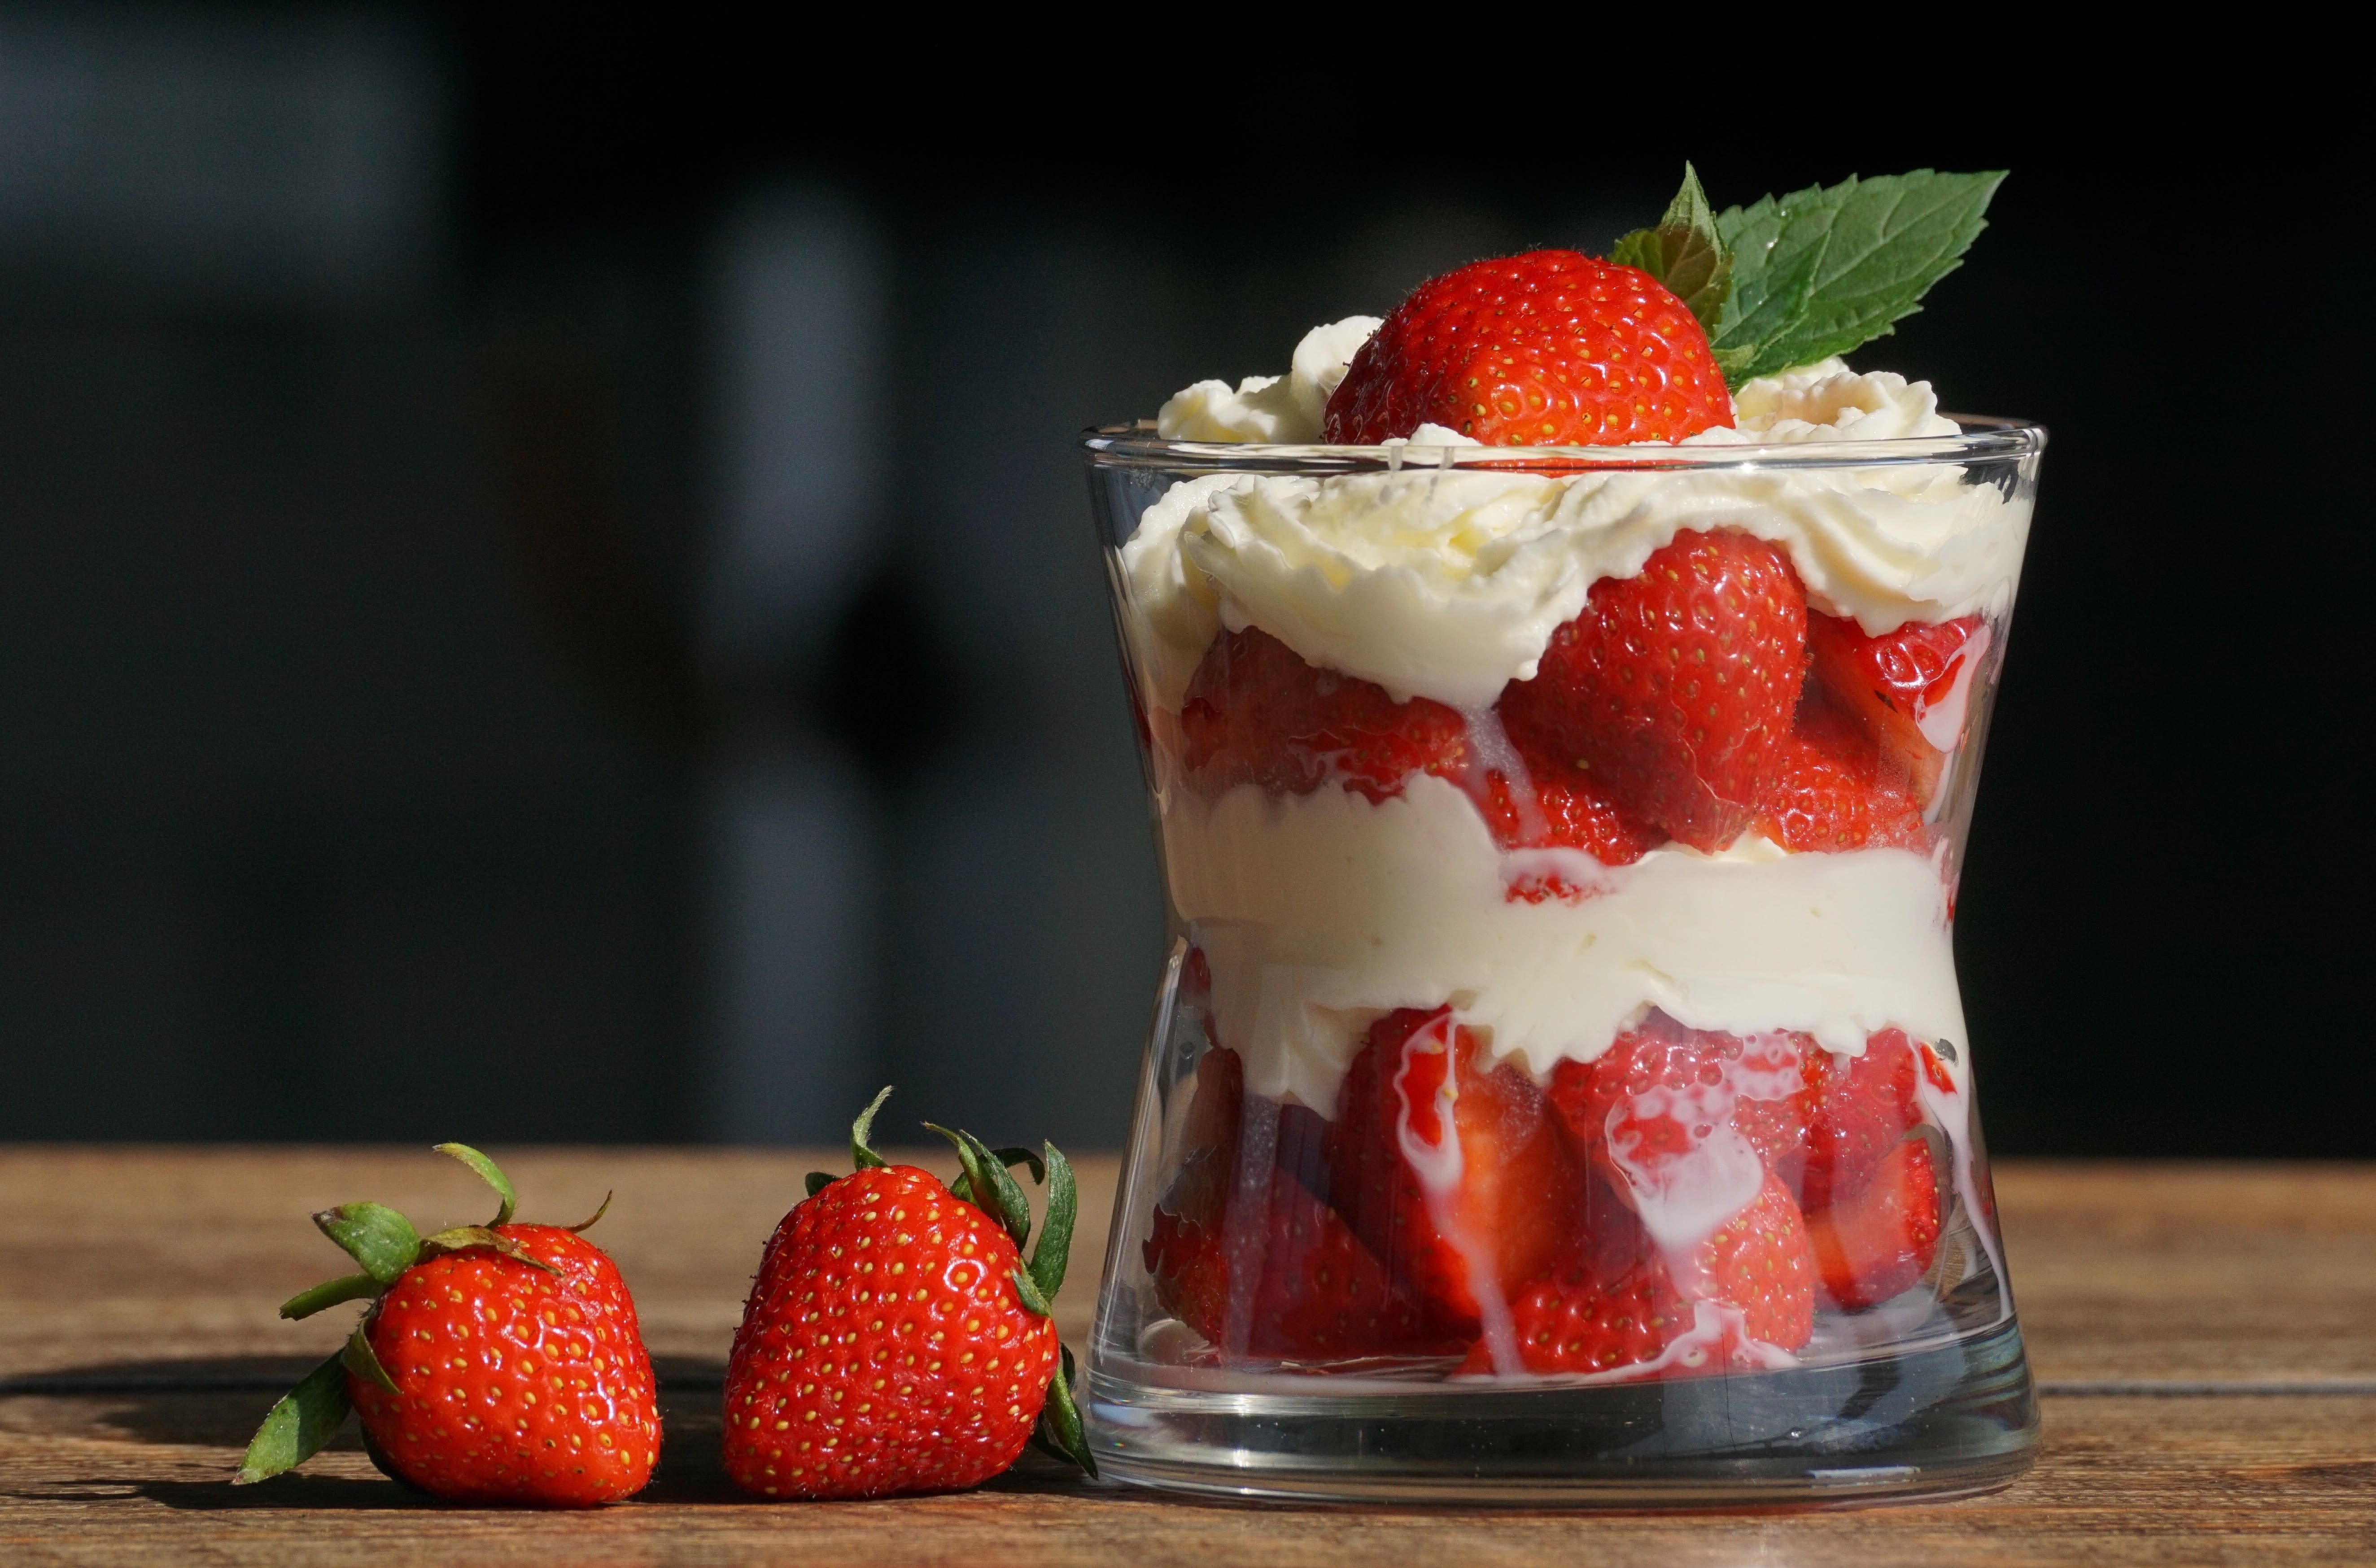 Strawberries and cream dessert